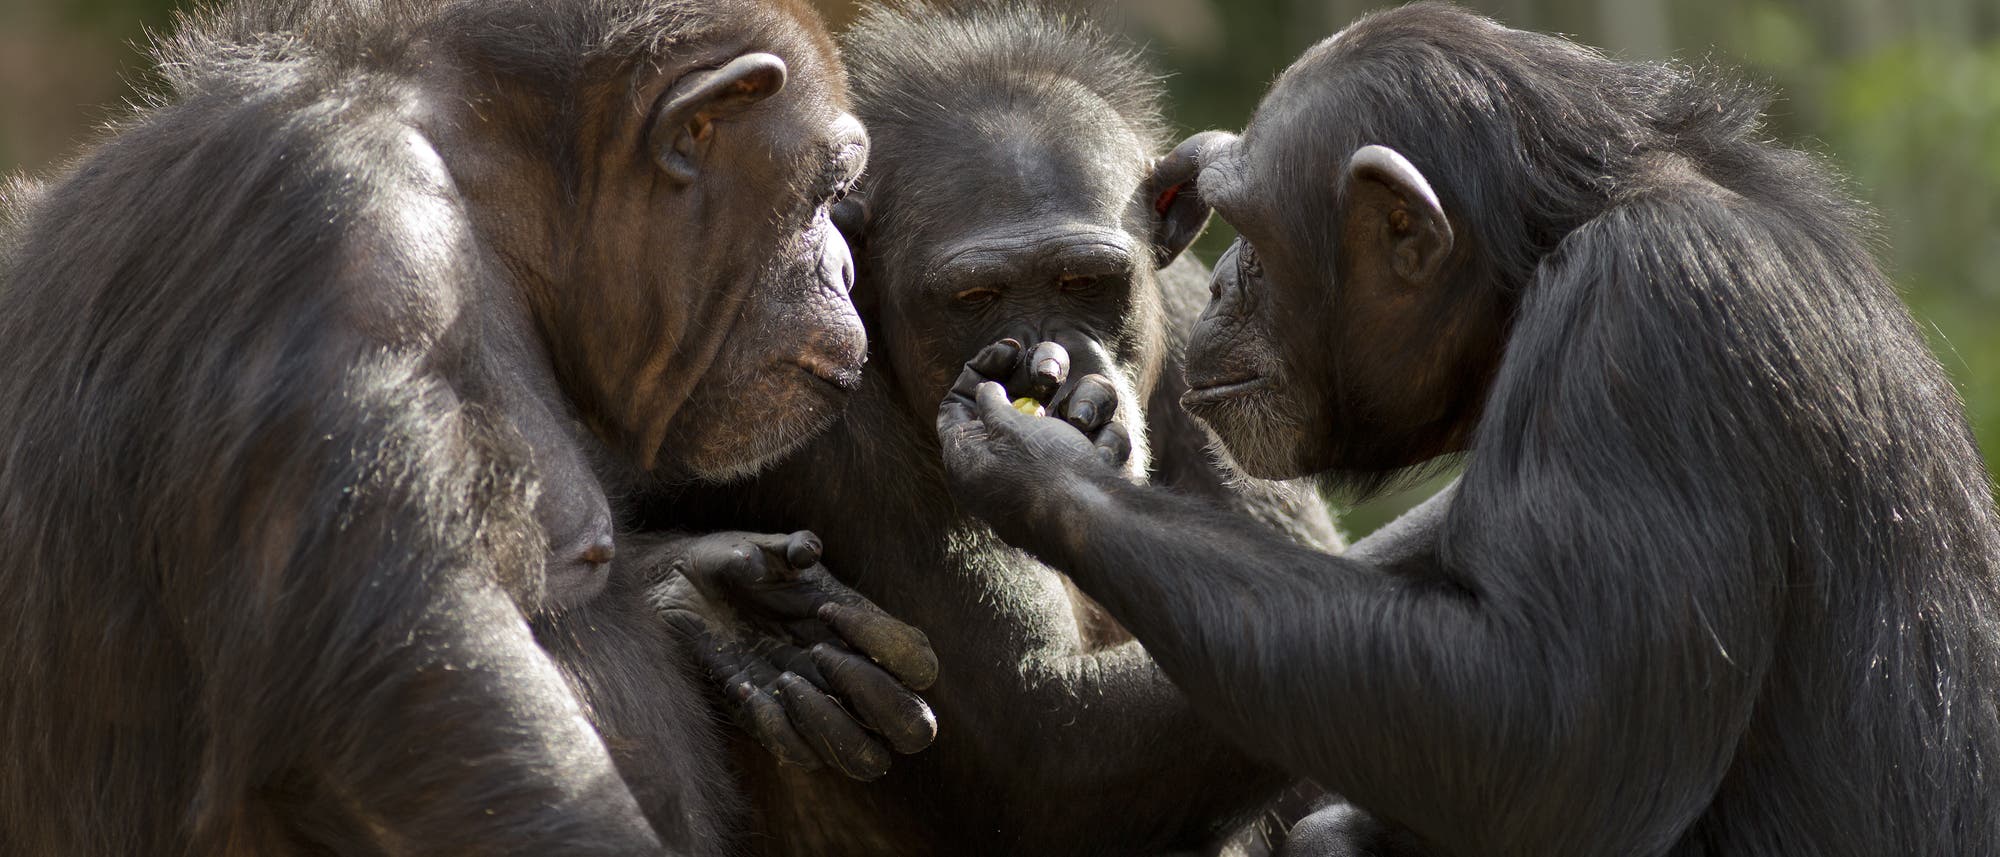 Drei Schimpansen in der Gruppe